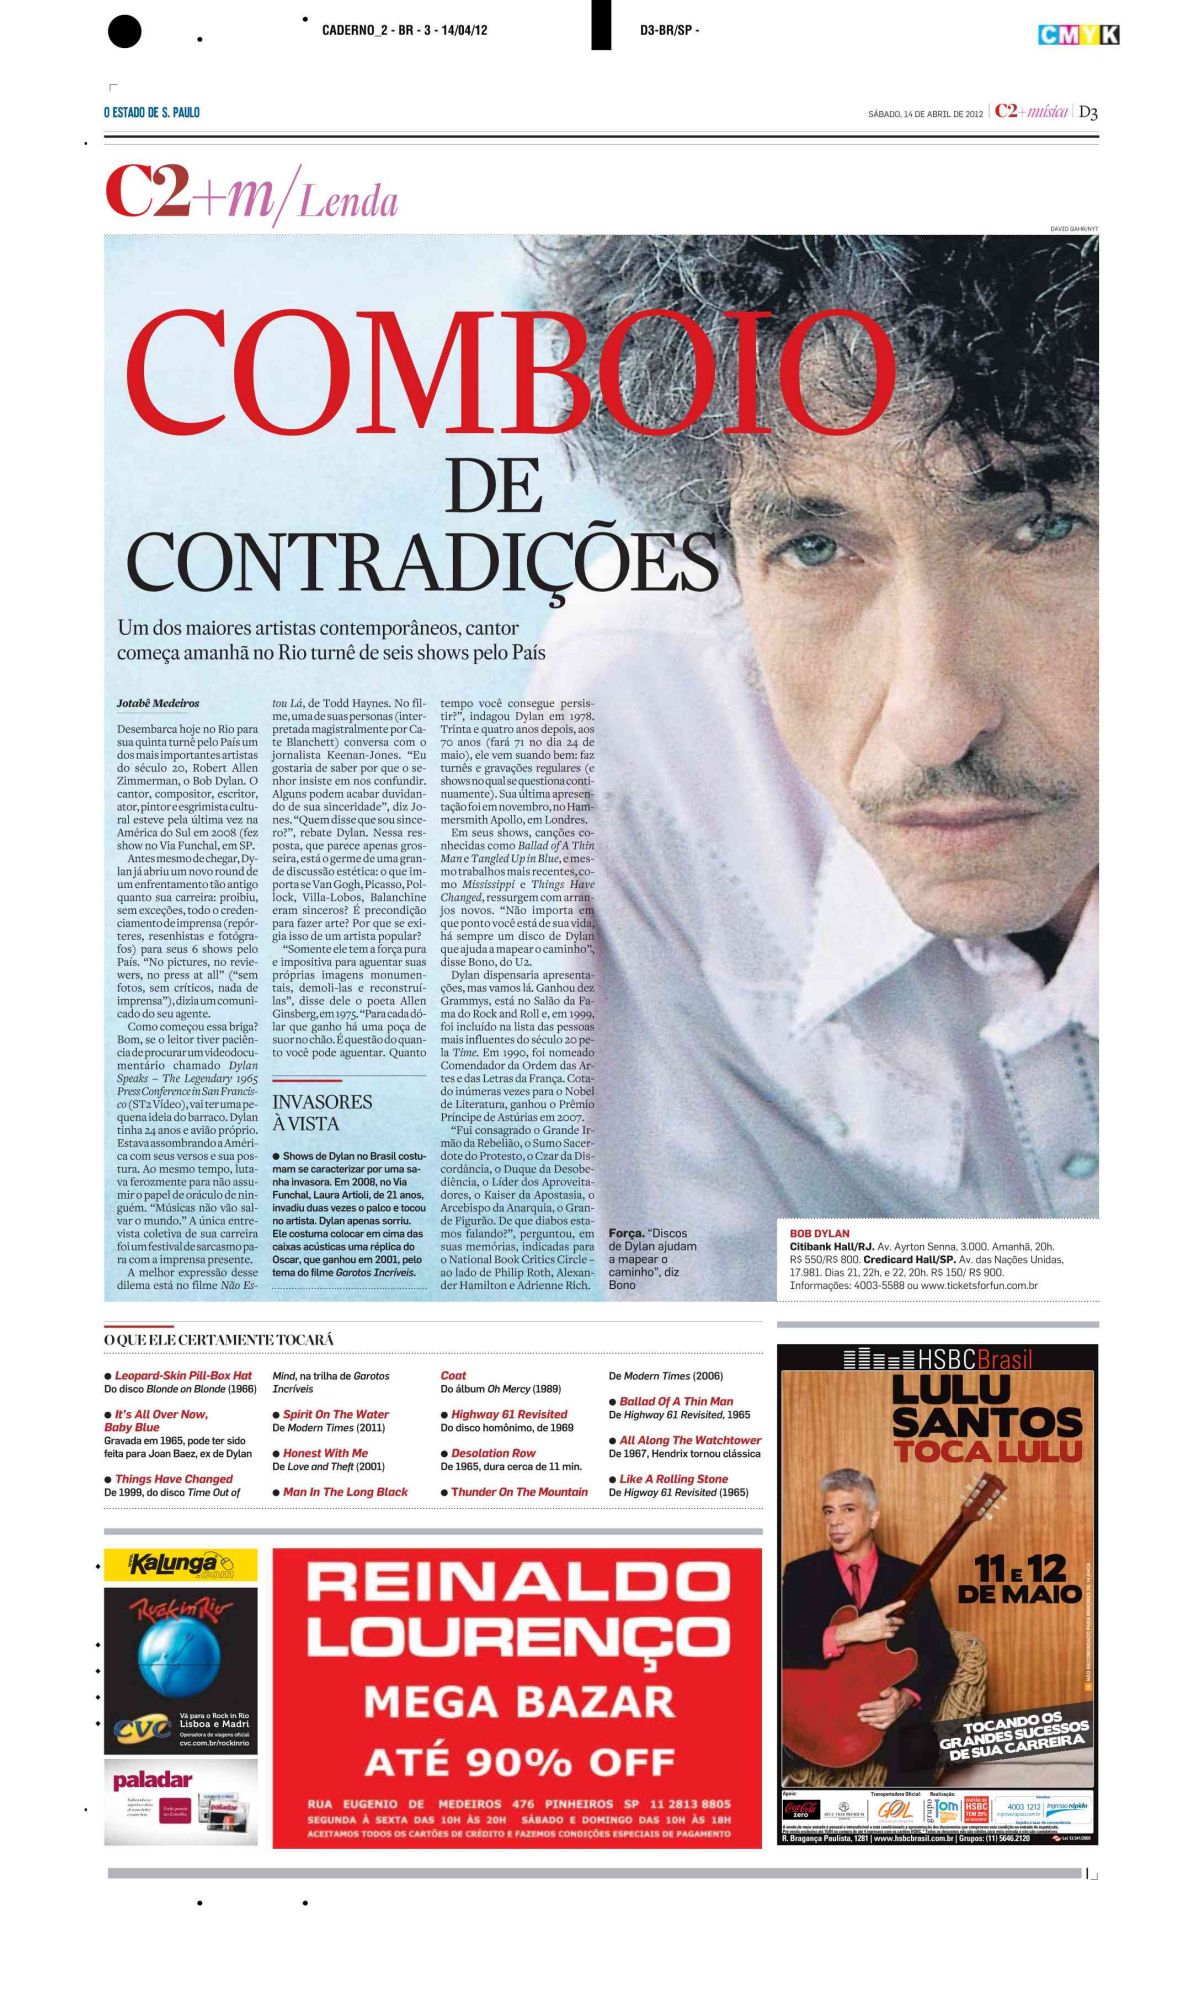 O ESTADO DE S. PAULO magazine Bob Dylan front cover